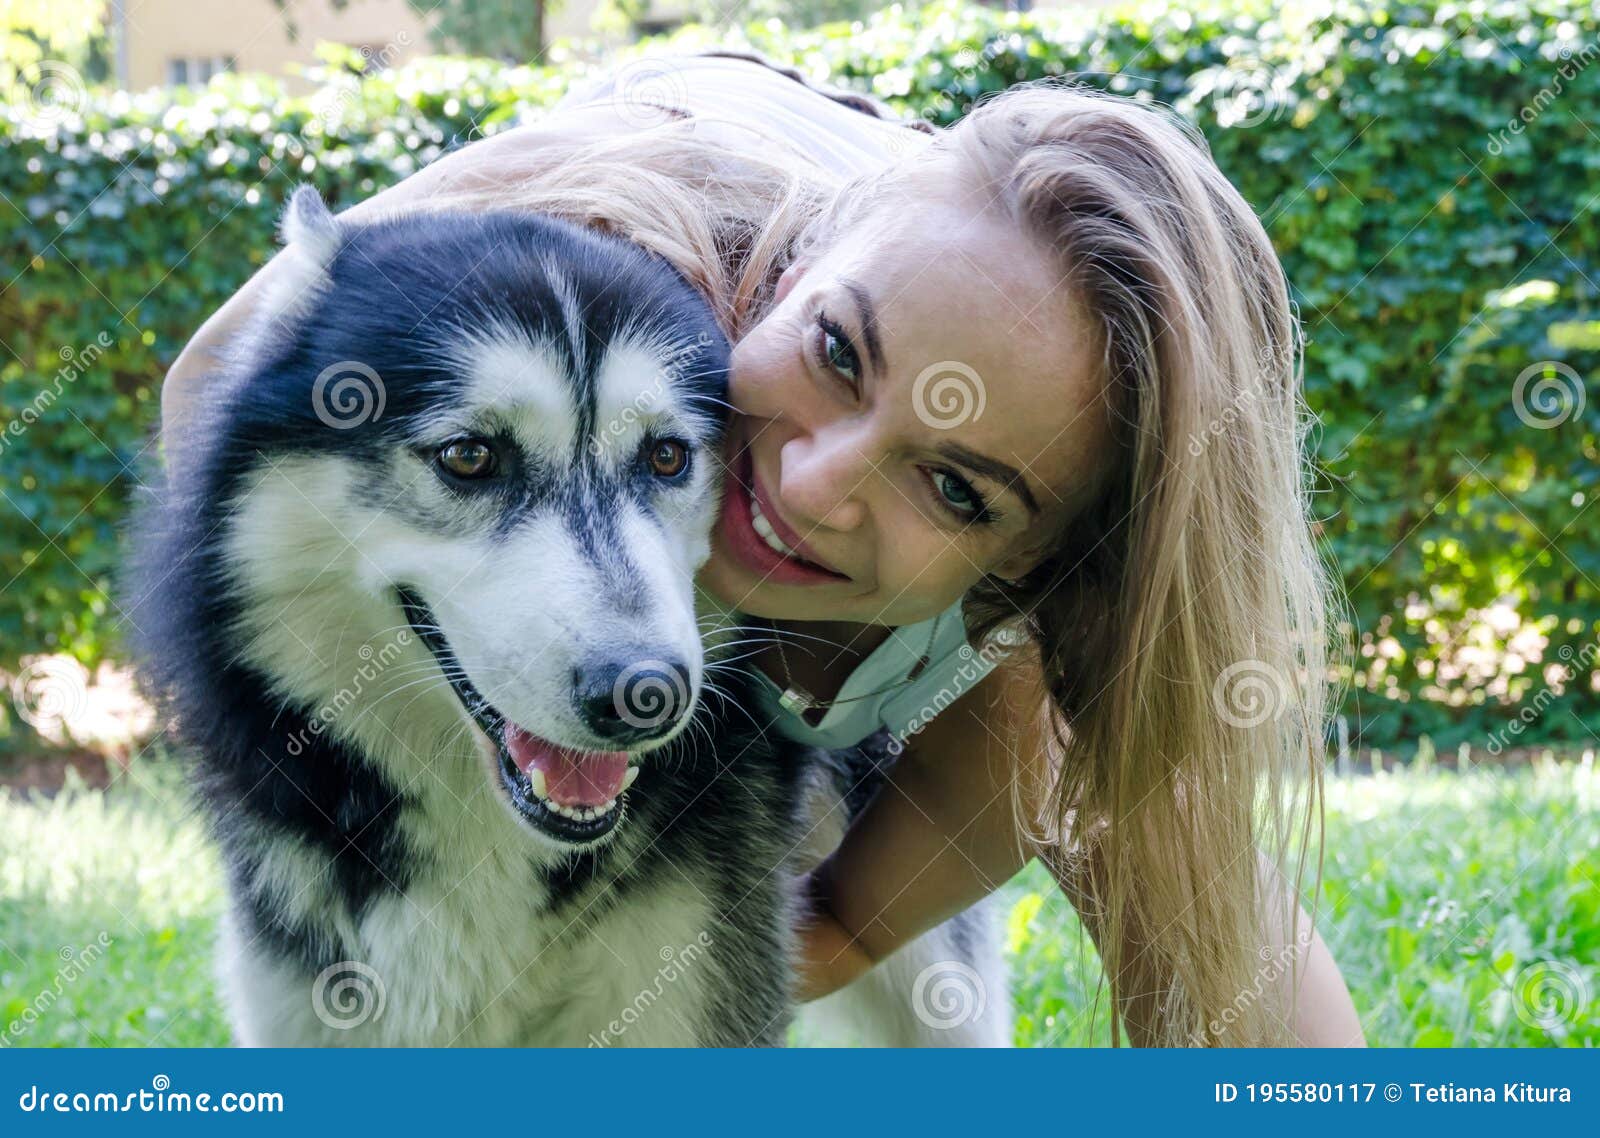 1. "Husky blonde hair selfie with blue eyes" - wide 3